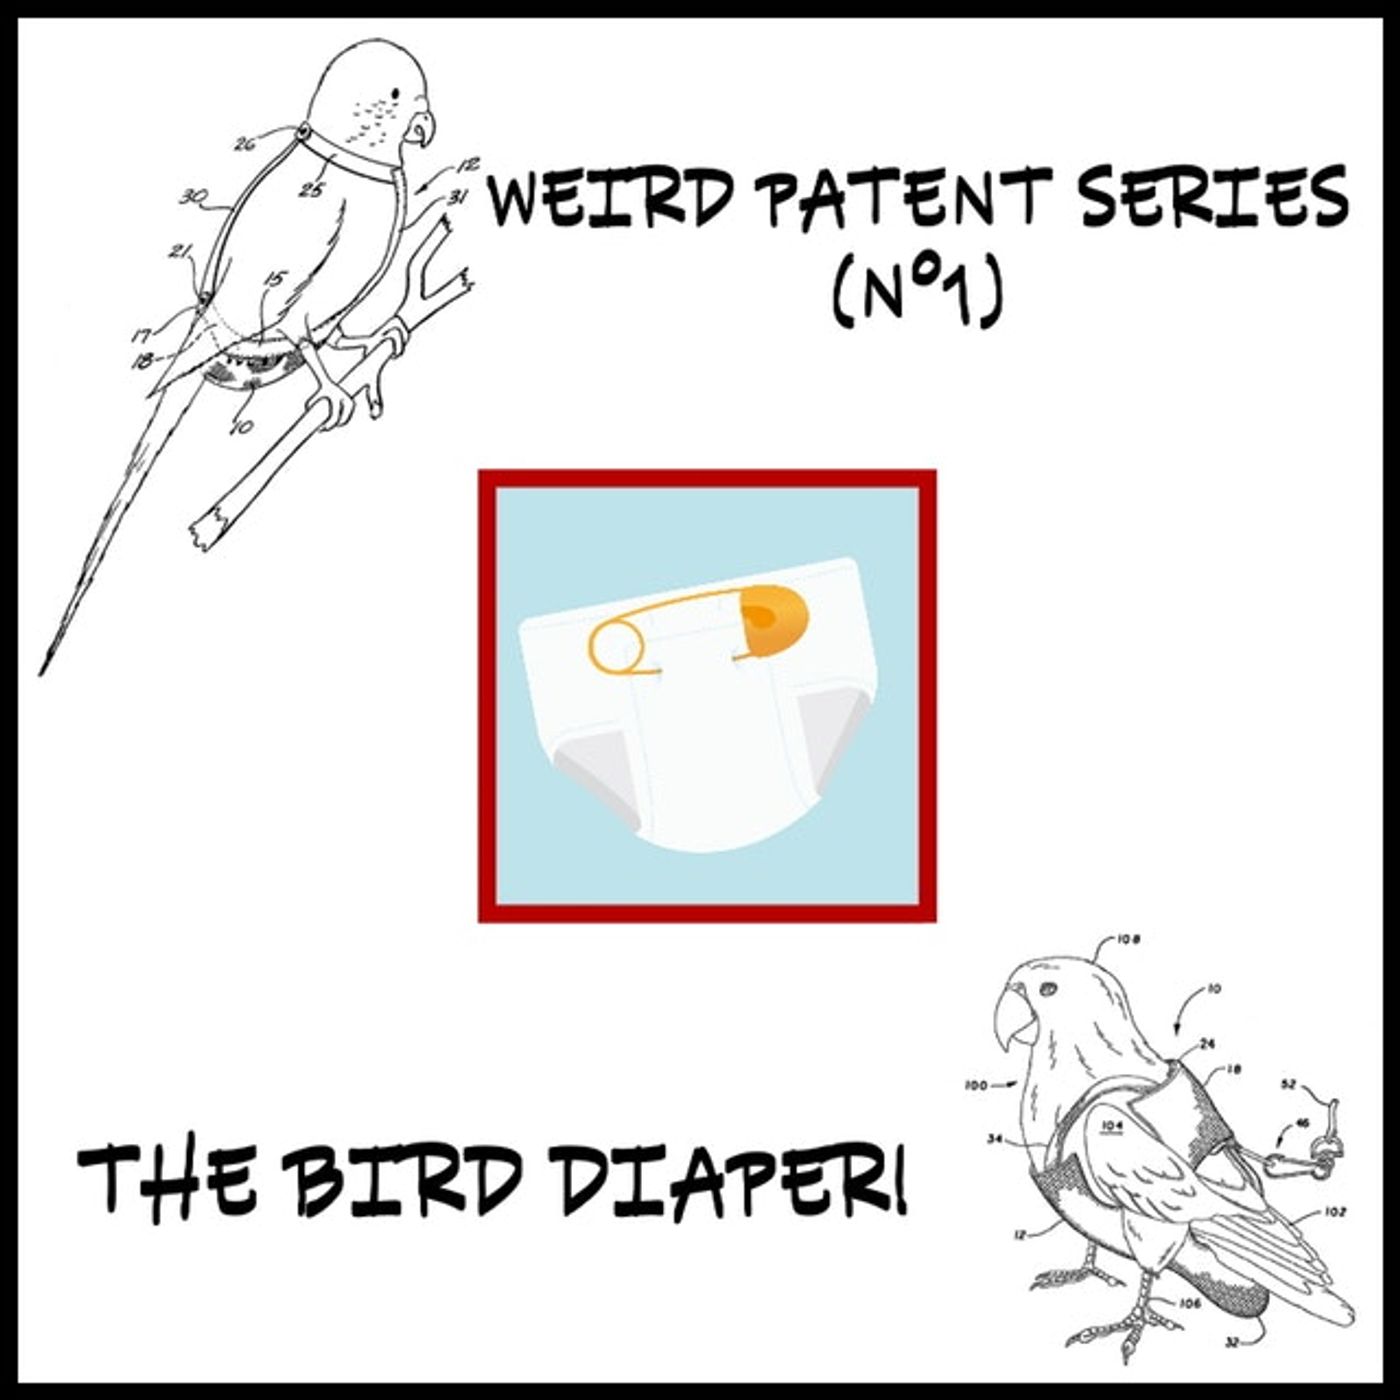 Weird patent series (N°1): "The Bird Diaper"!